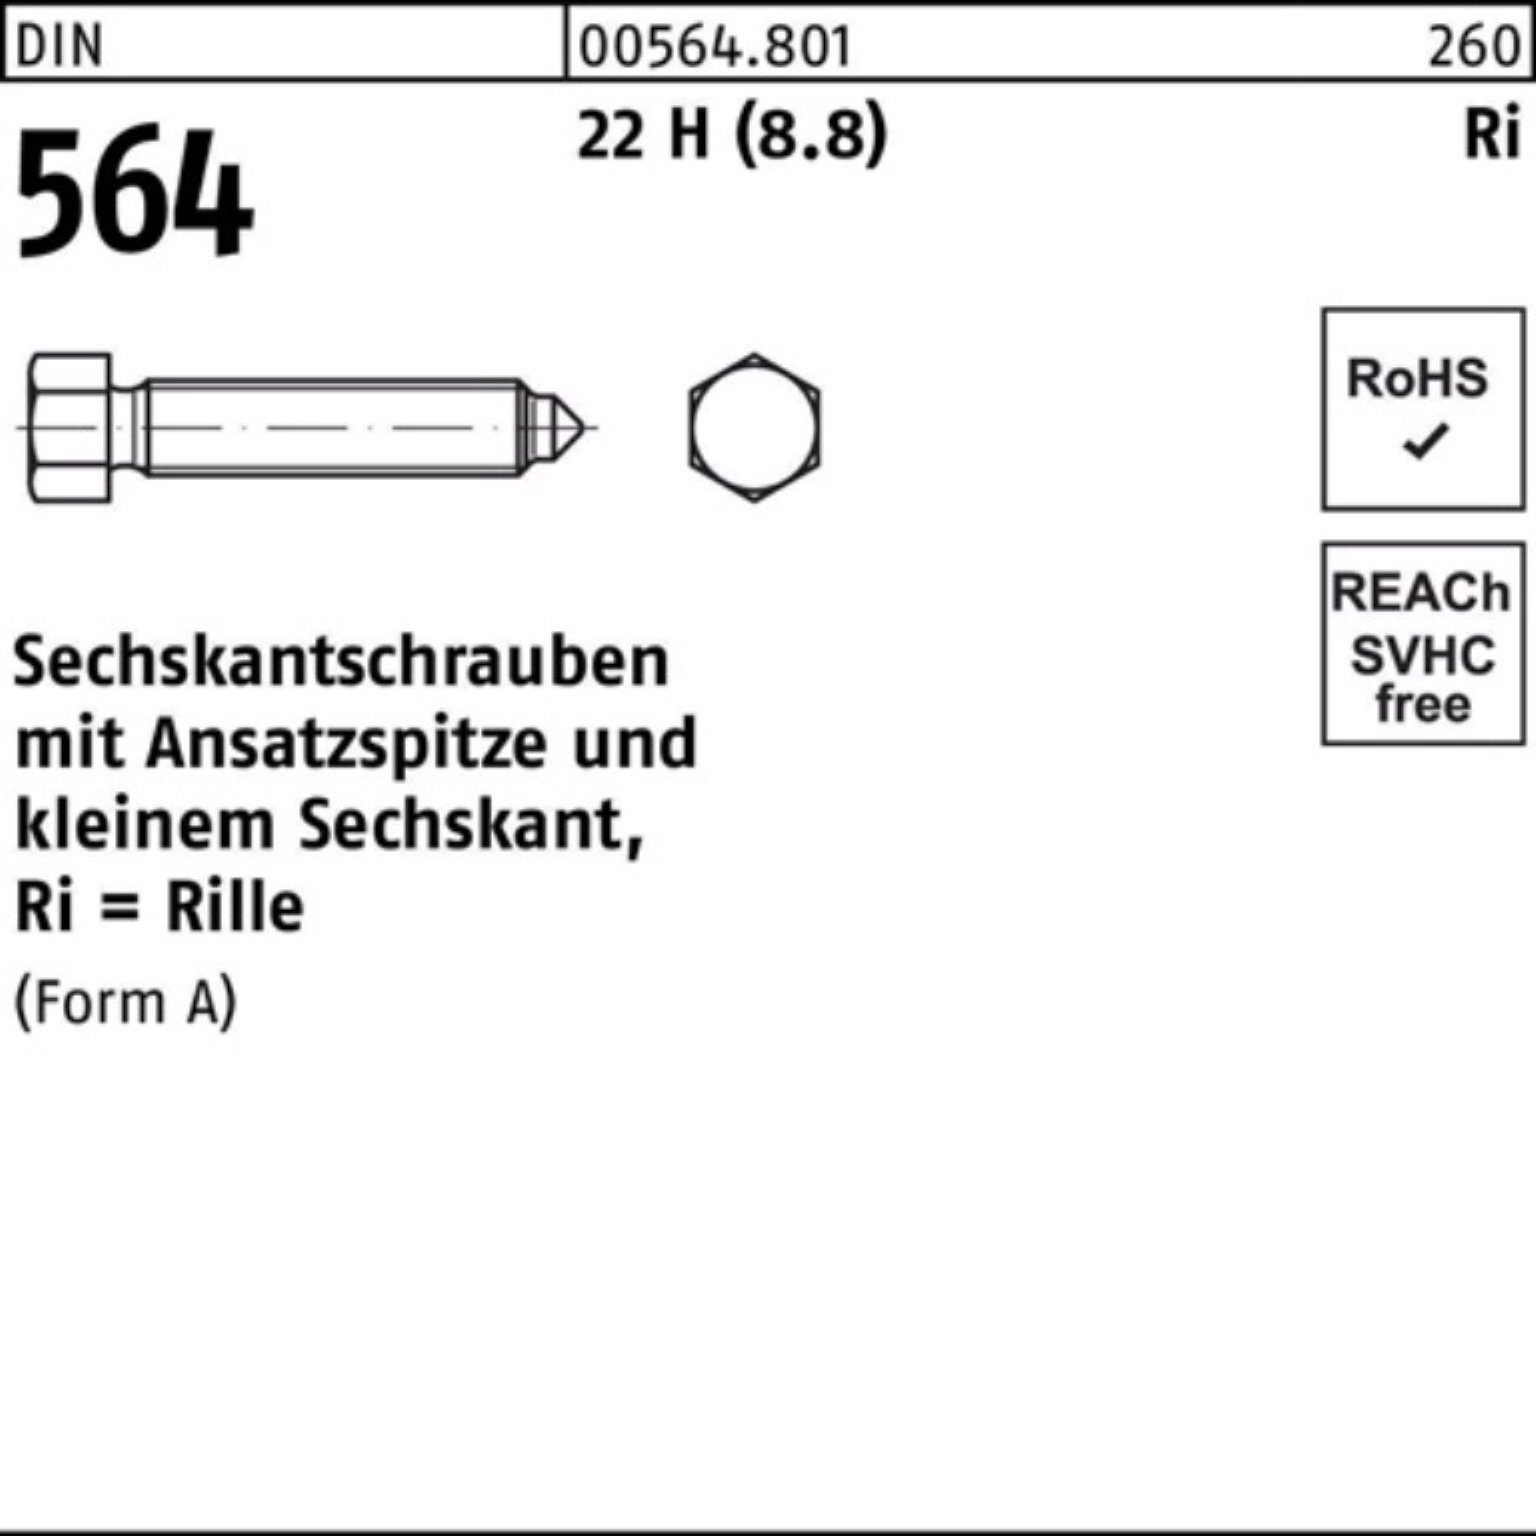 Reyher Sechskantschraube 100er Pack Sechskantschraube DIN 564 Ansatzspitze AM 16x 60 22 H (8.8)